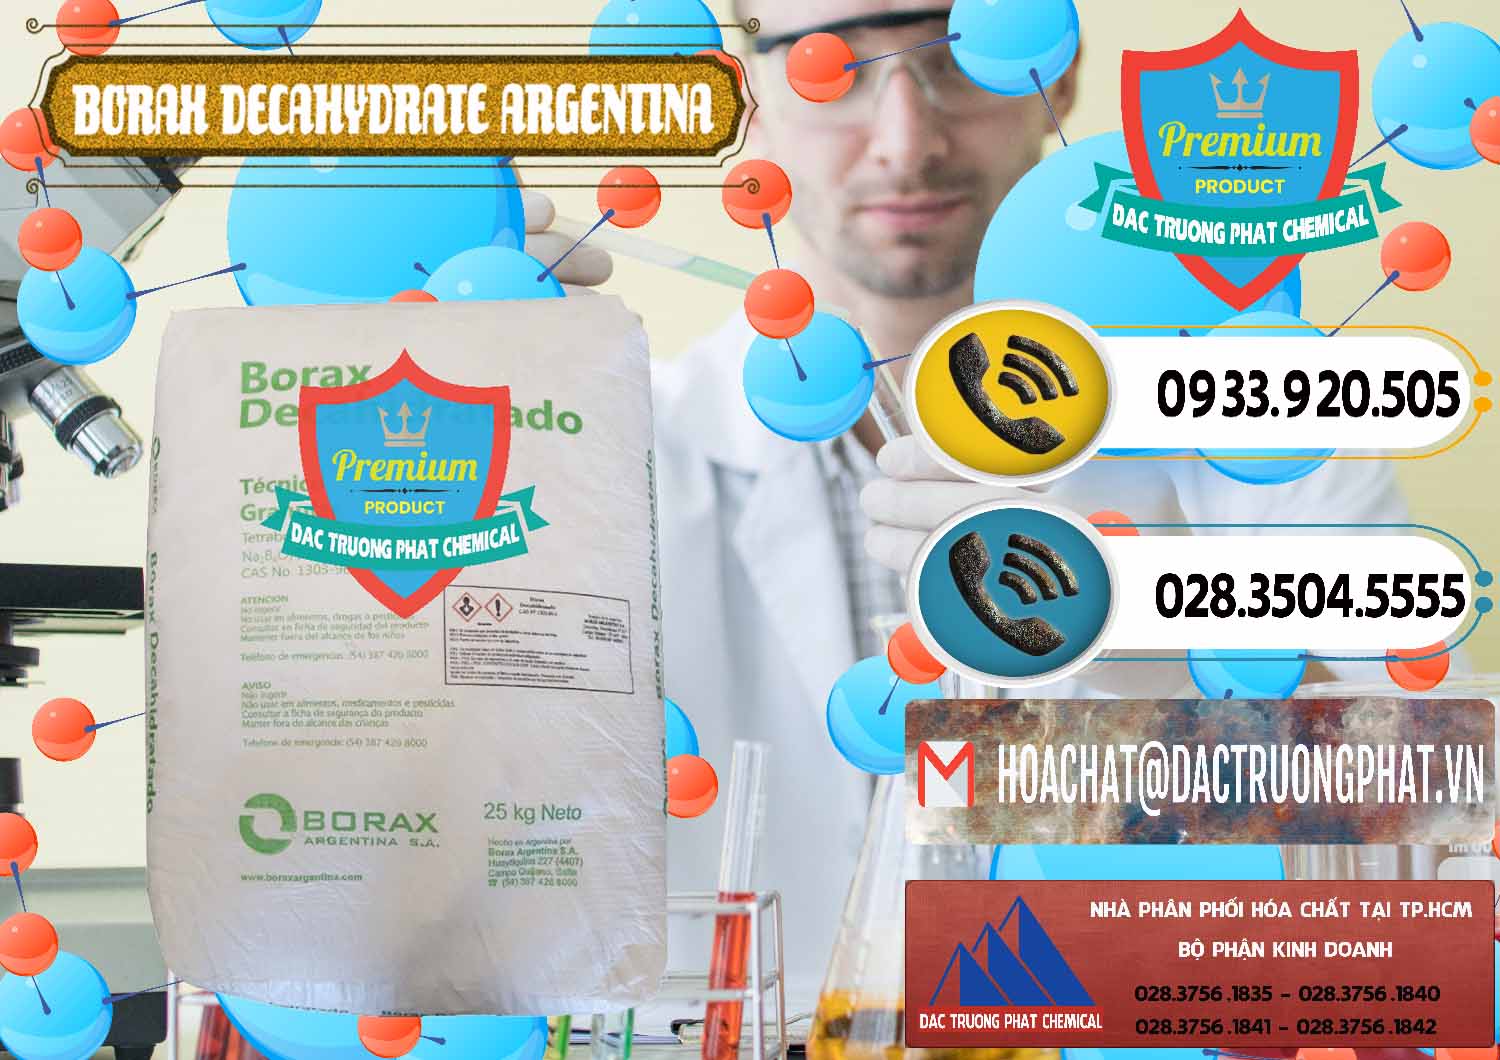 Công ty bán ( phân phối ) Borax Decahydrate Argentina - 0446 - Cty chuyên phân phối & cung ứng hóa chất tại TP.HCM - hoachatdetnhuom.vn